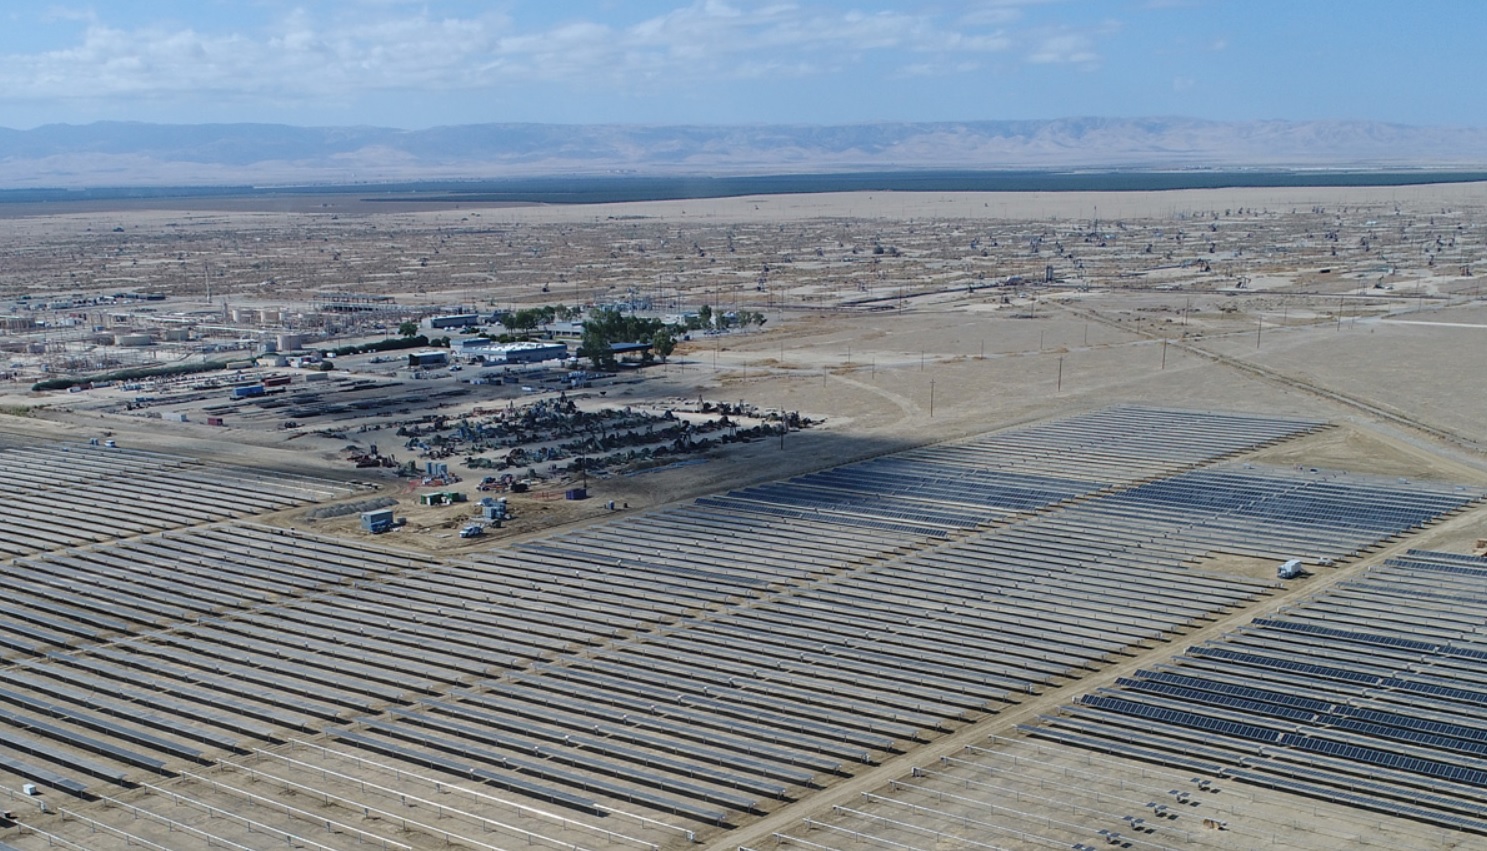 La energía solar en EE.UU. supera los 100 GW de capacidad con 5 GW instalados en el primer trimestre de 2021